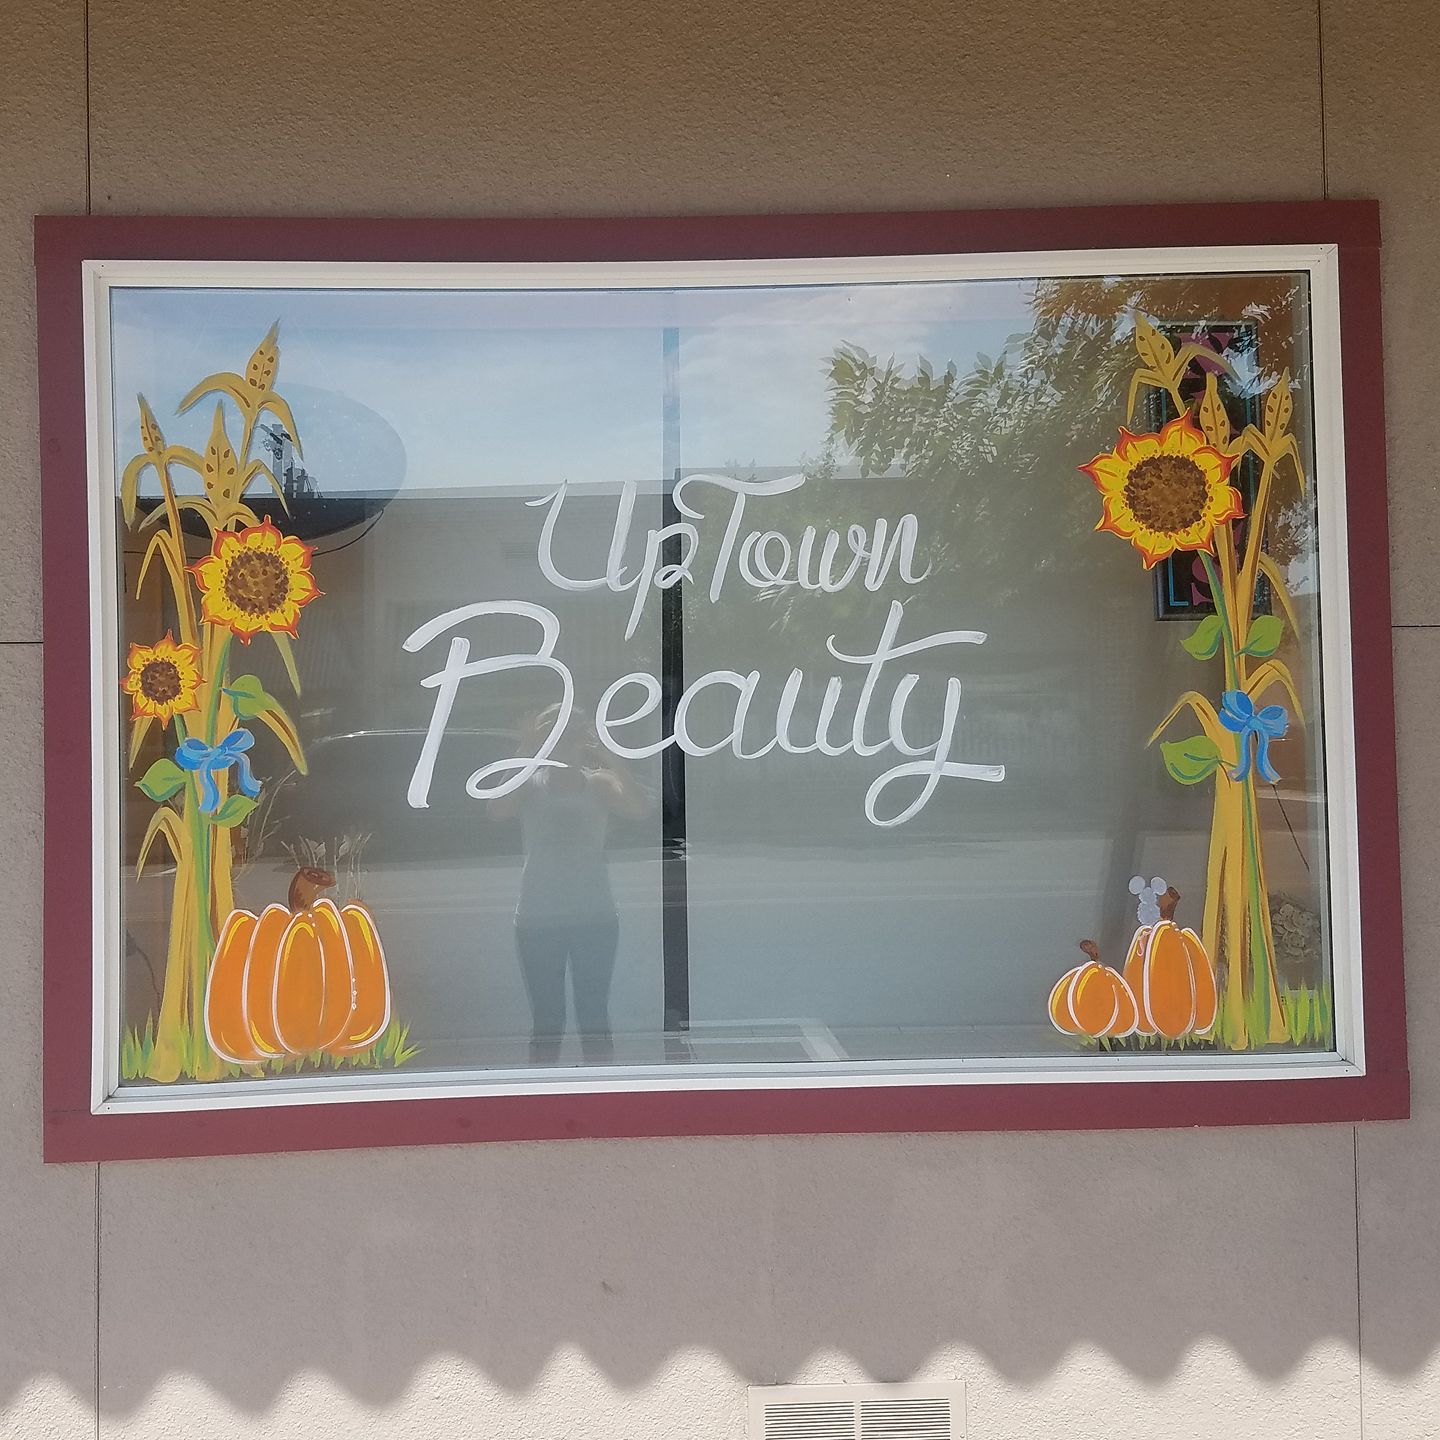 Uptown Beauty 200 W Main St, Emmett Idaho 83617